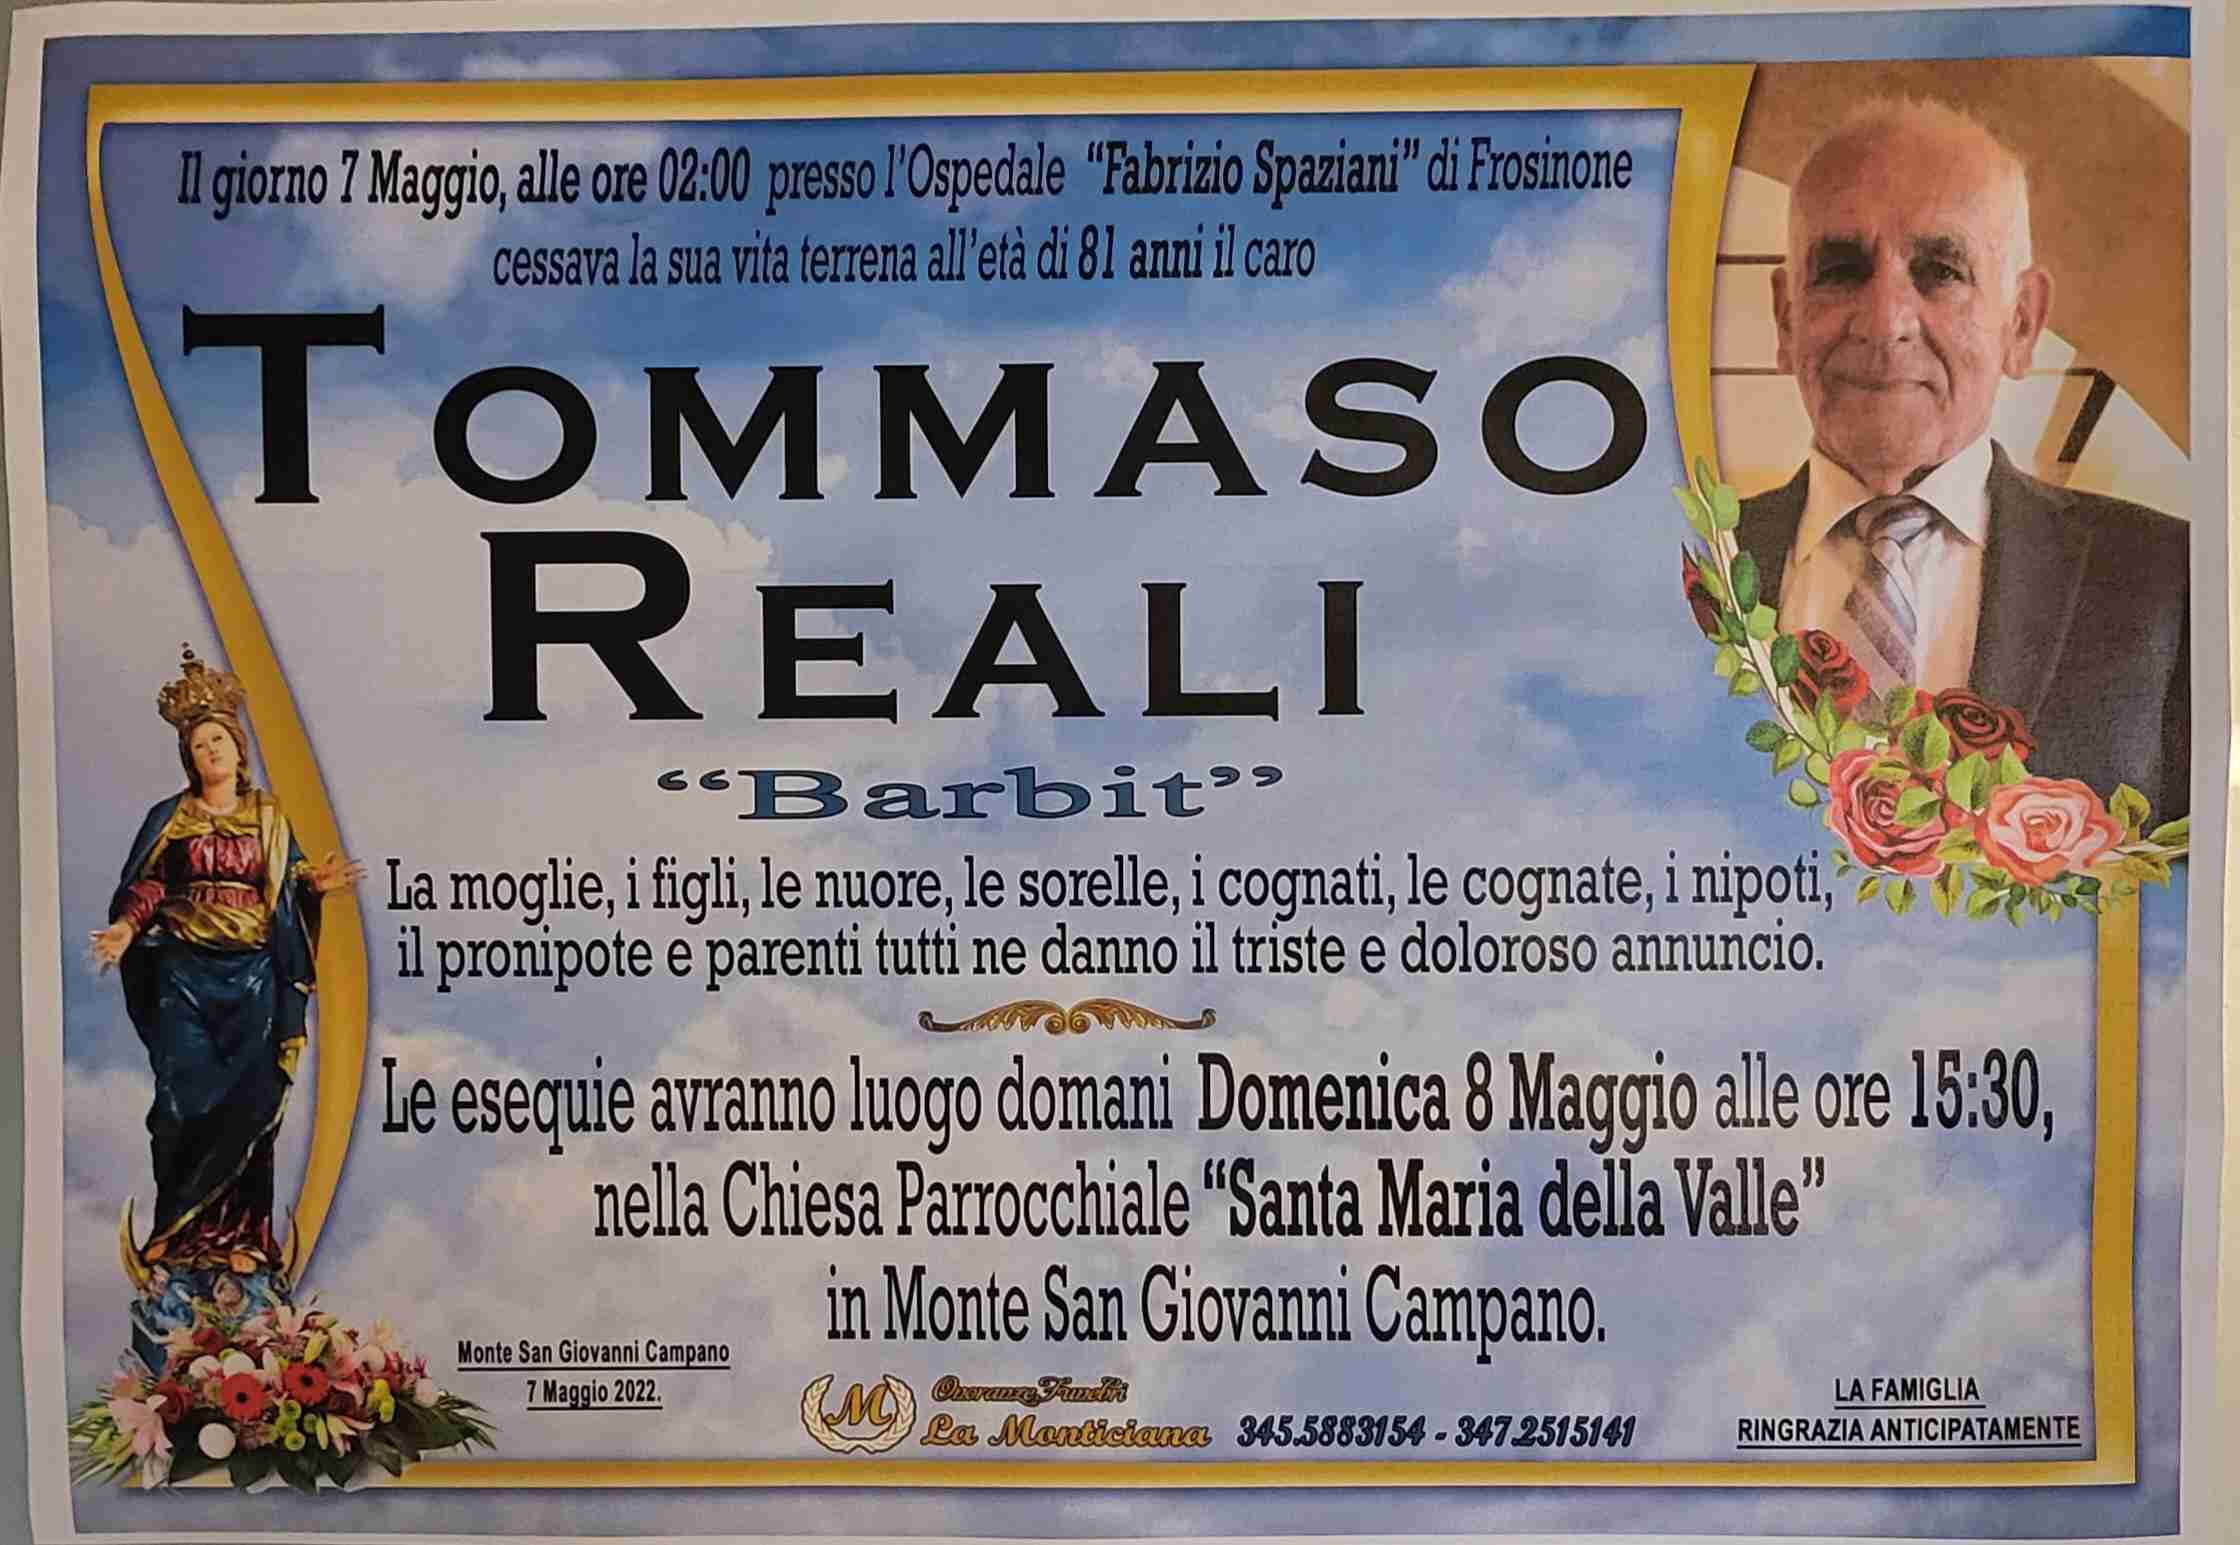 Tommaso Reali